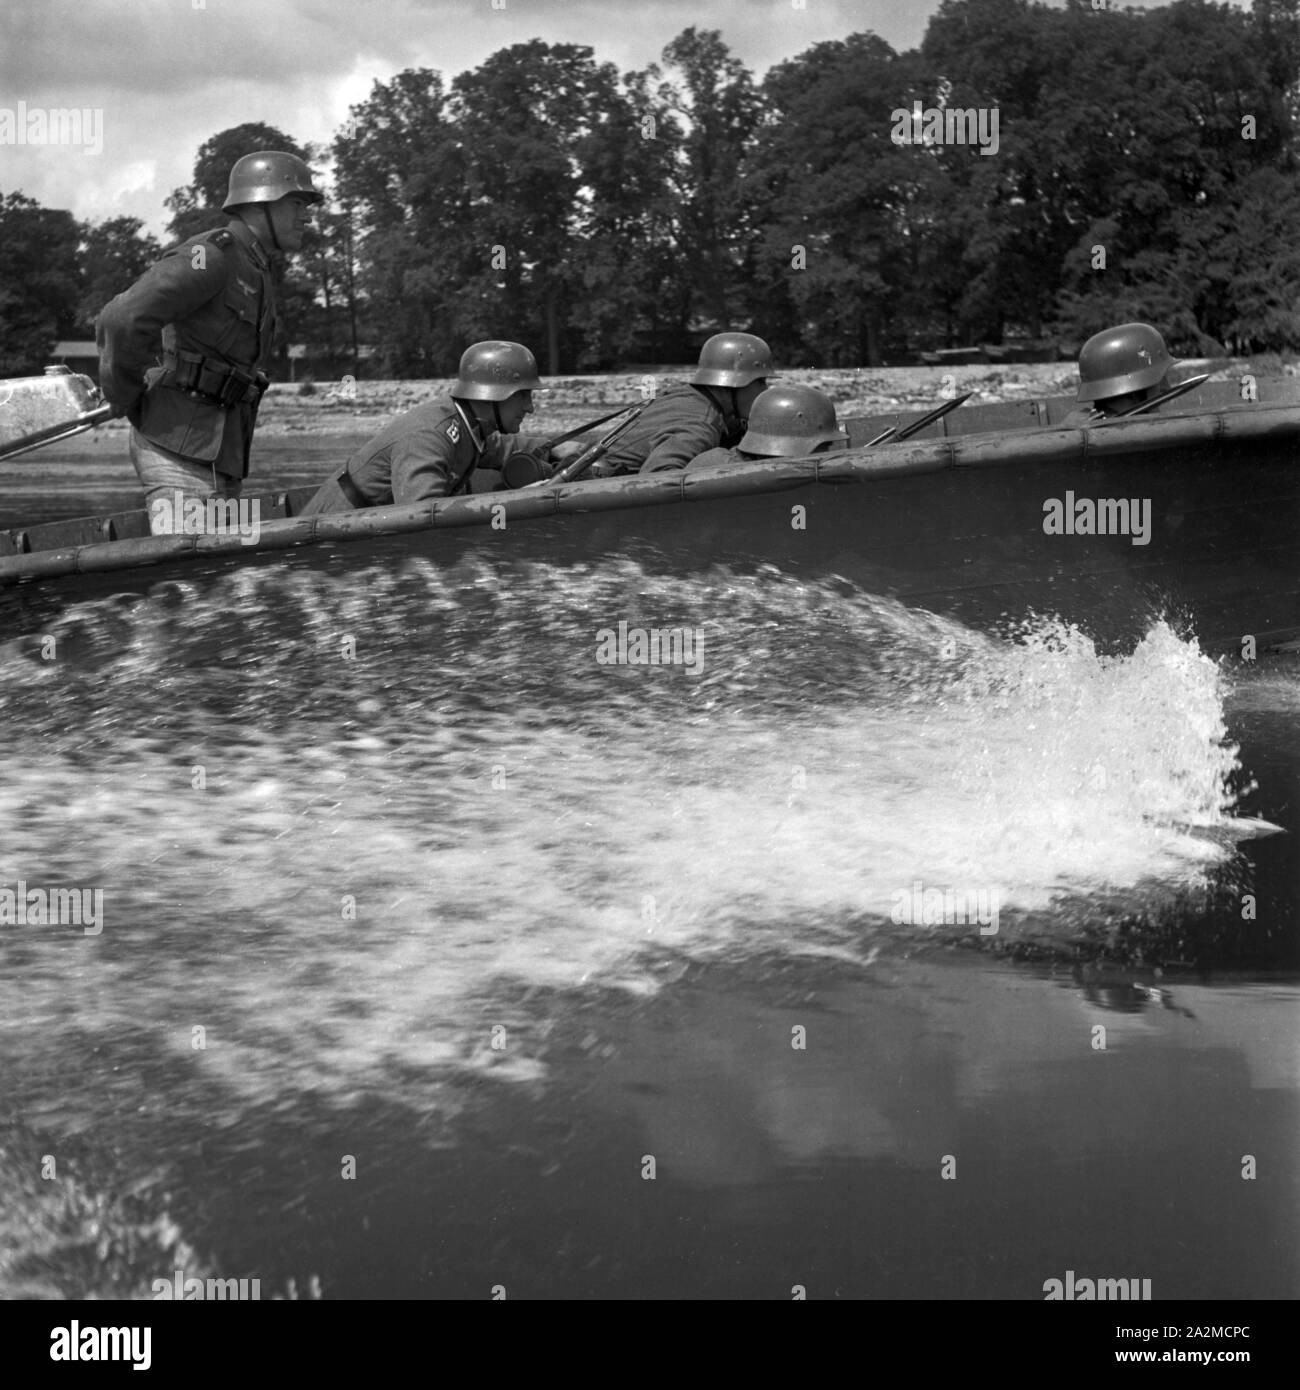 Original-Bildunterschrift: Sturmbootfahrer der Pioniere, Deutschland 1940er Jahre. Soldiers at an assault boat, Germany 1940s. Stock Photo